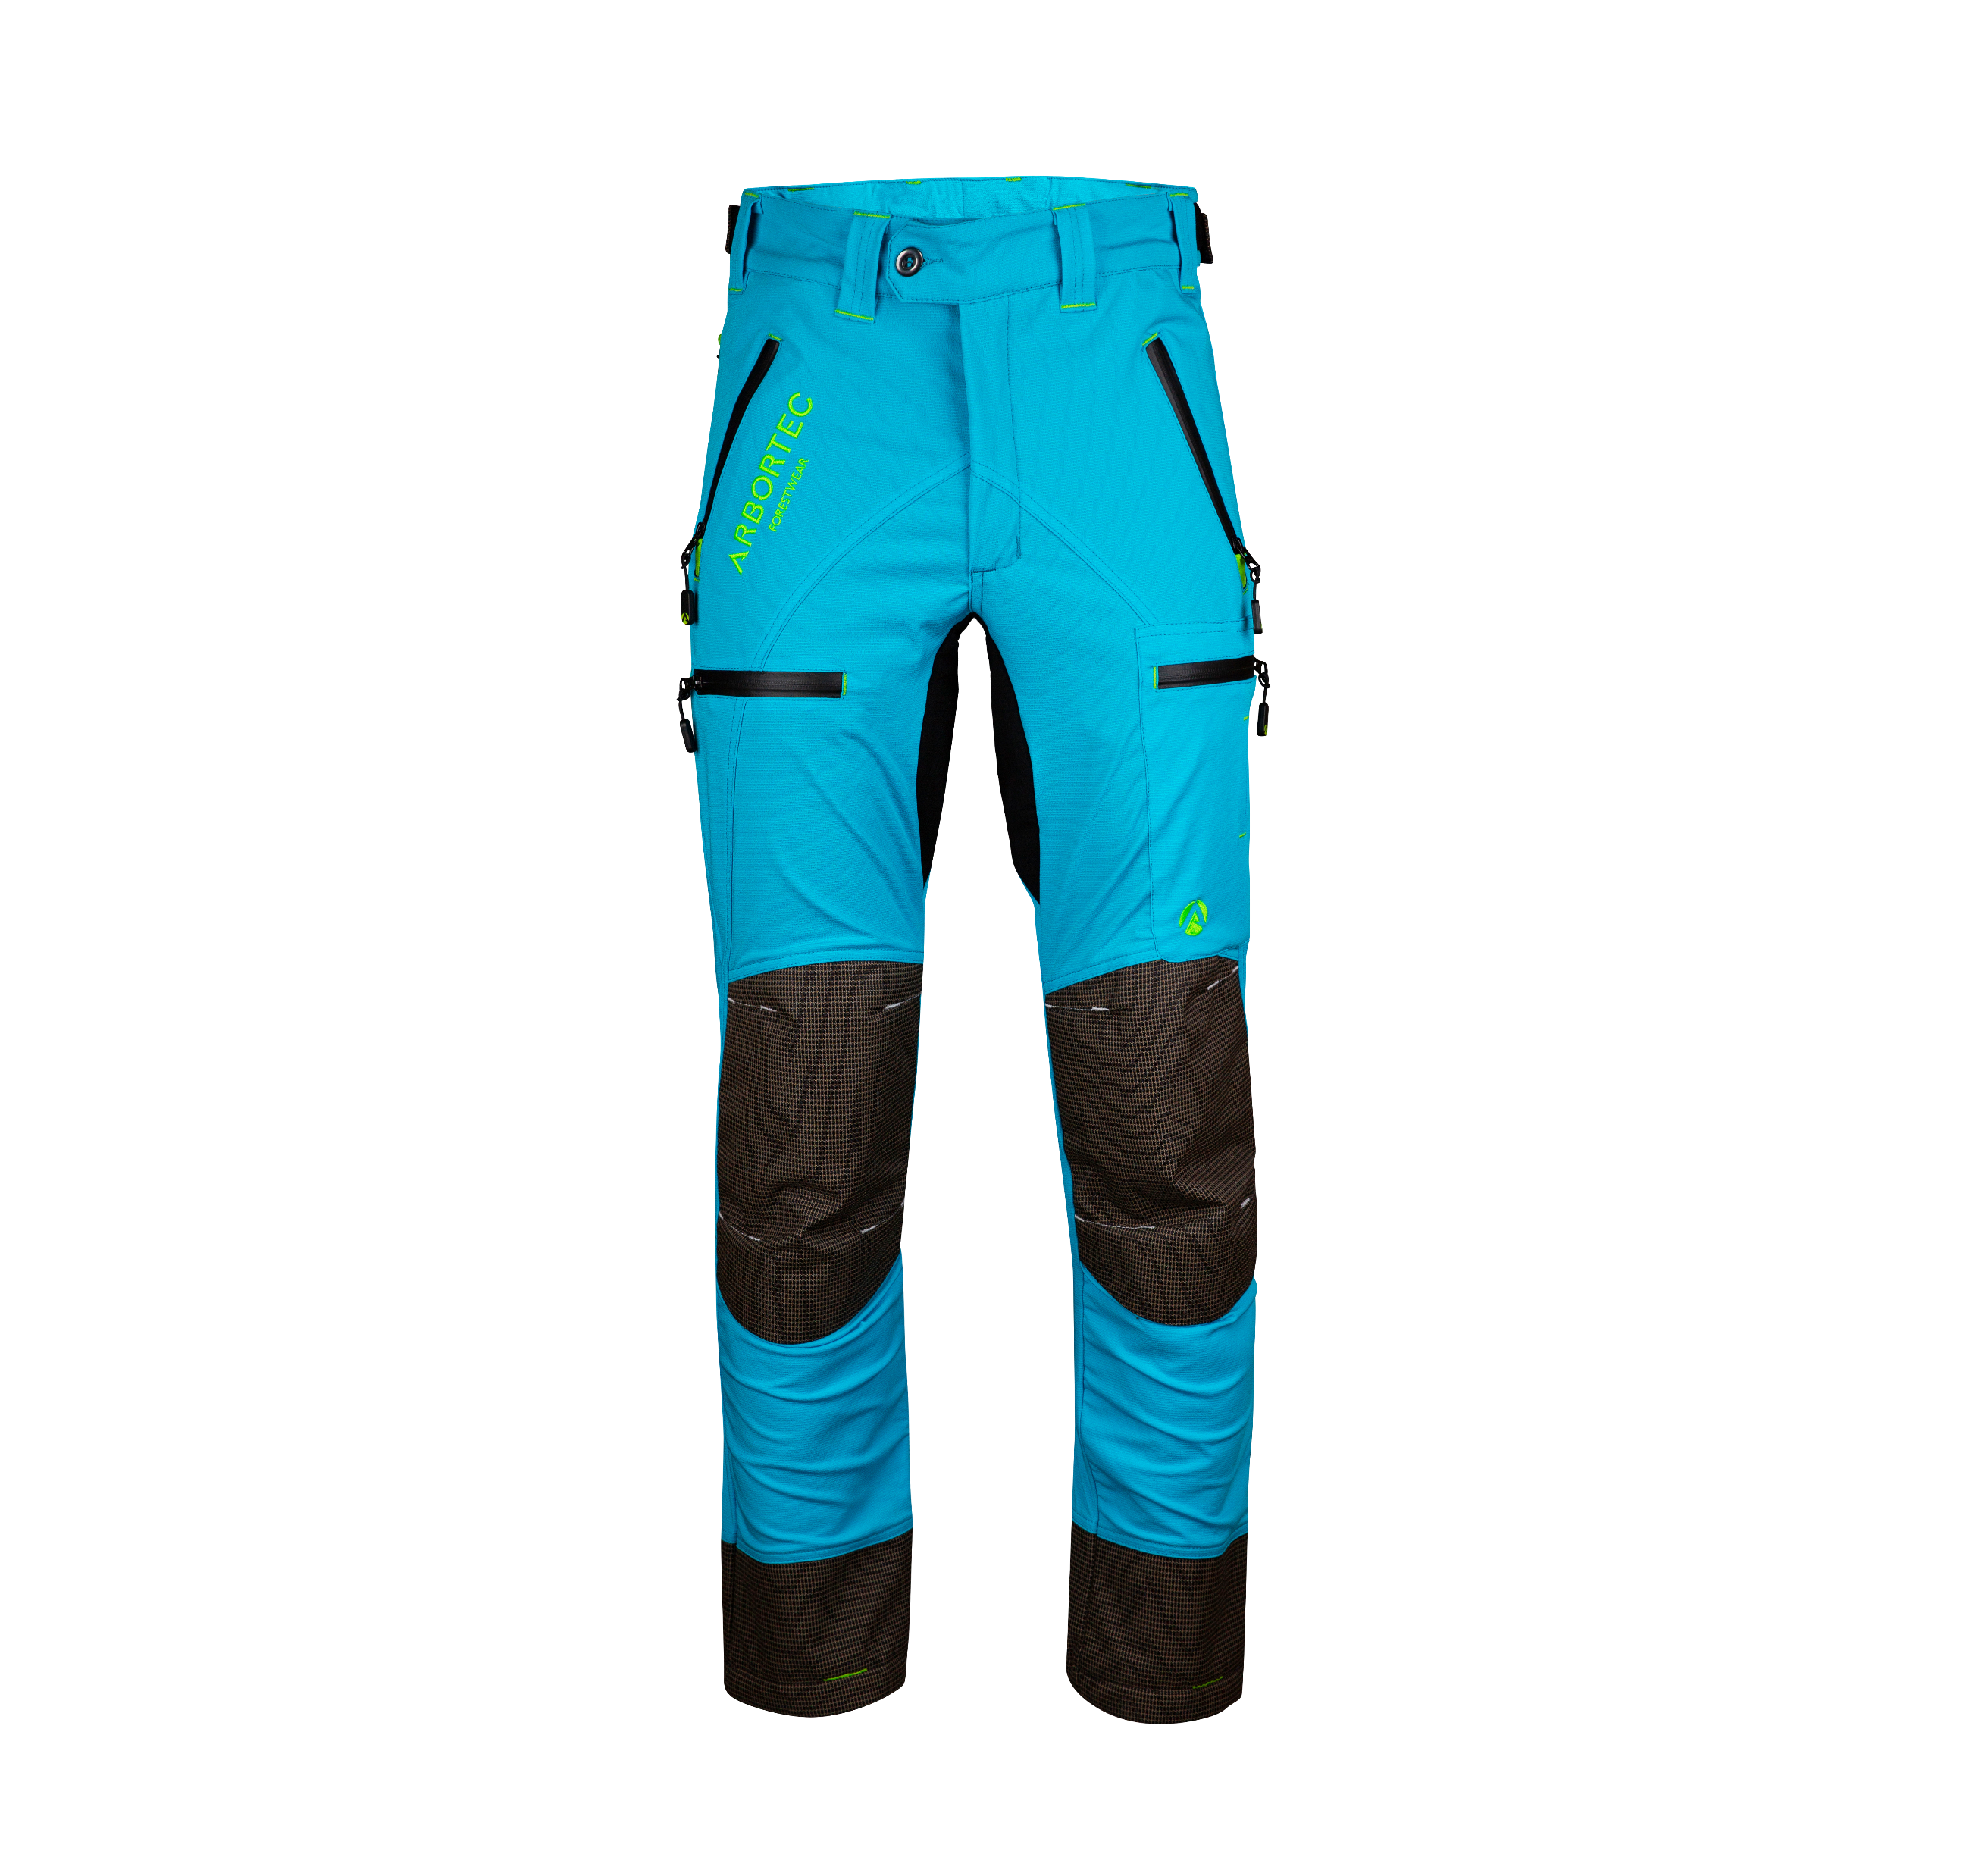 AT4160 Breatheflex Pro Trousers Non-Protective - Aqua